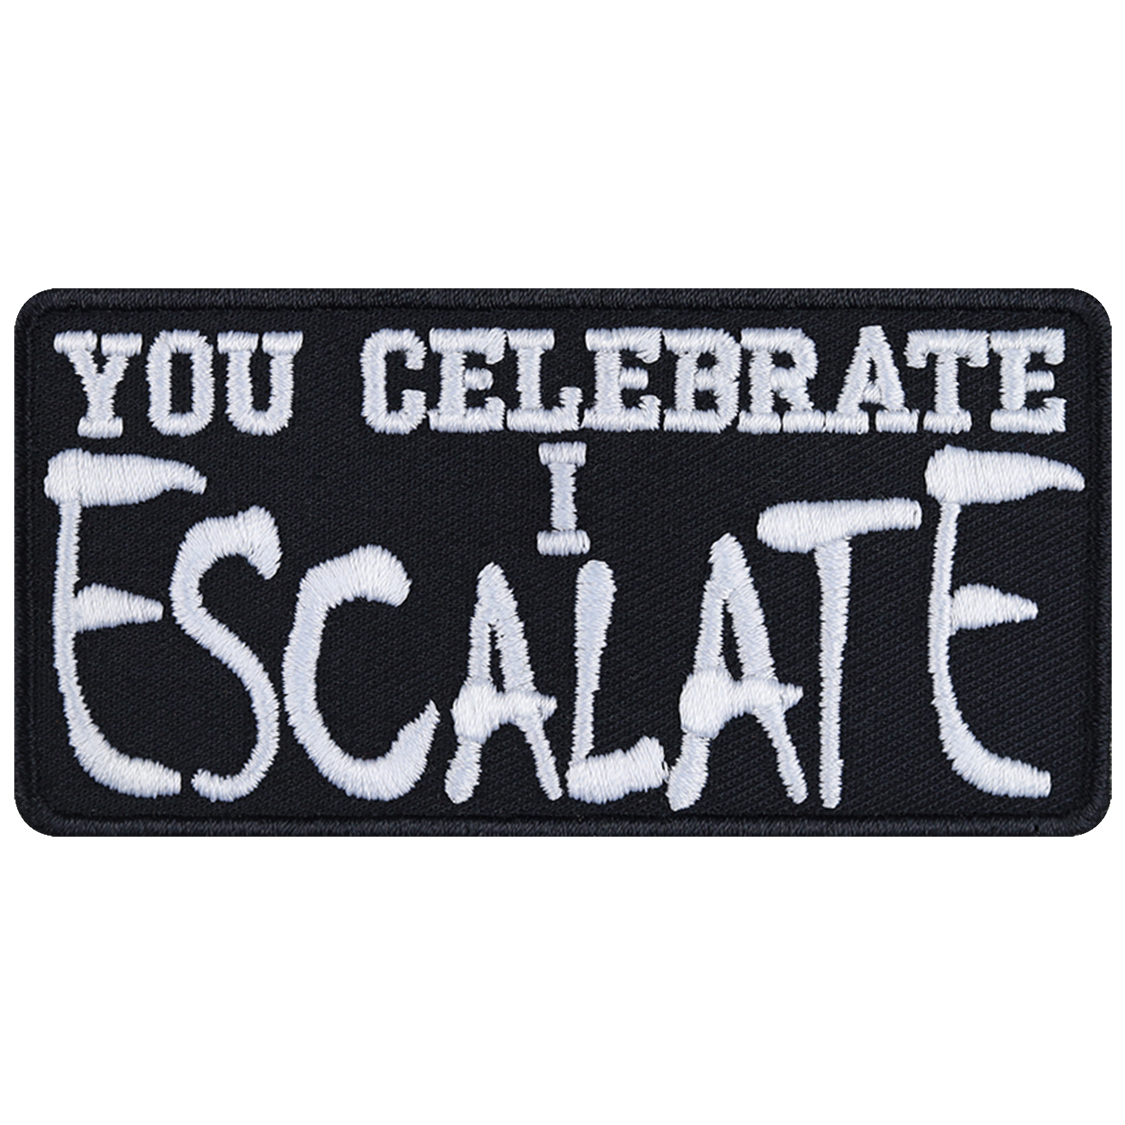 You celebrate, I escalate - Patch